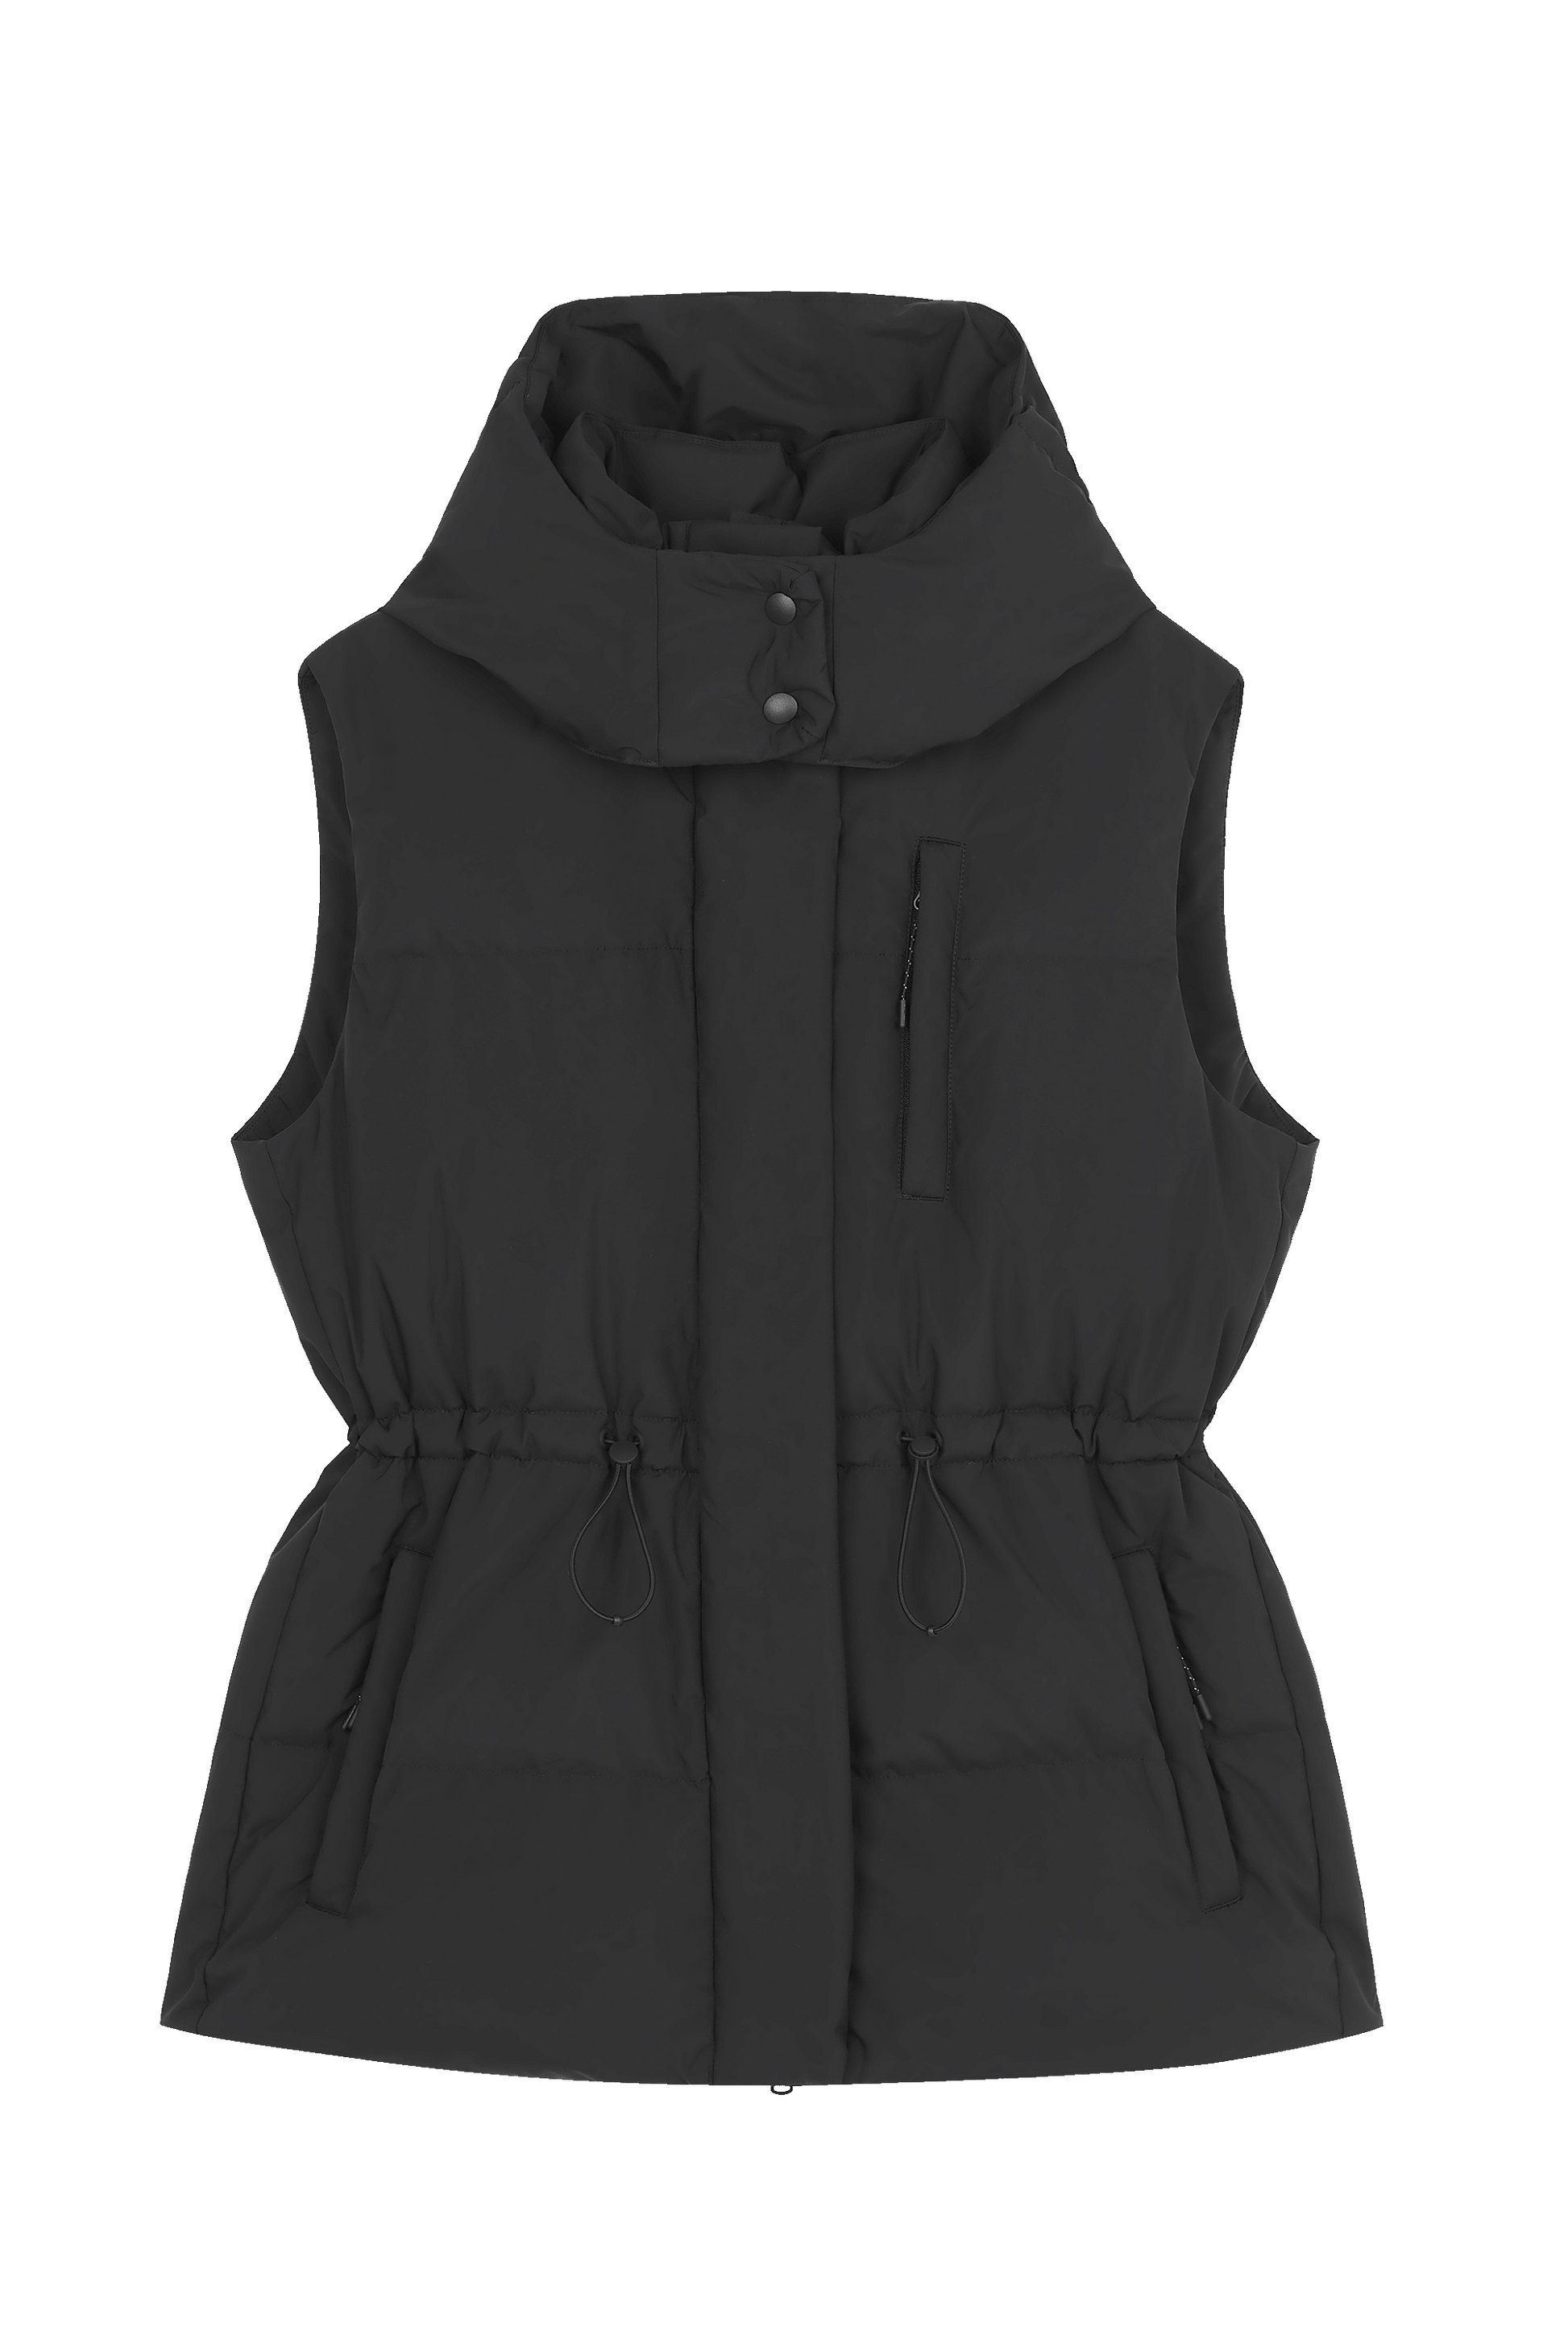 image of black down vest